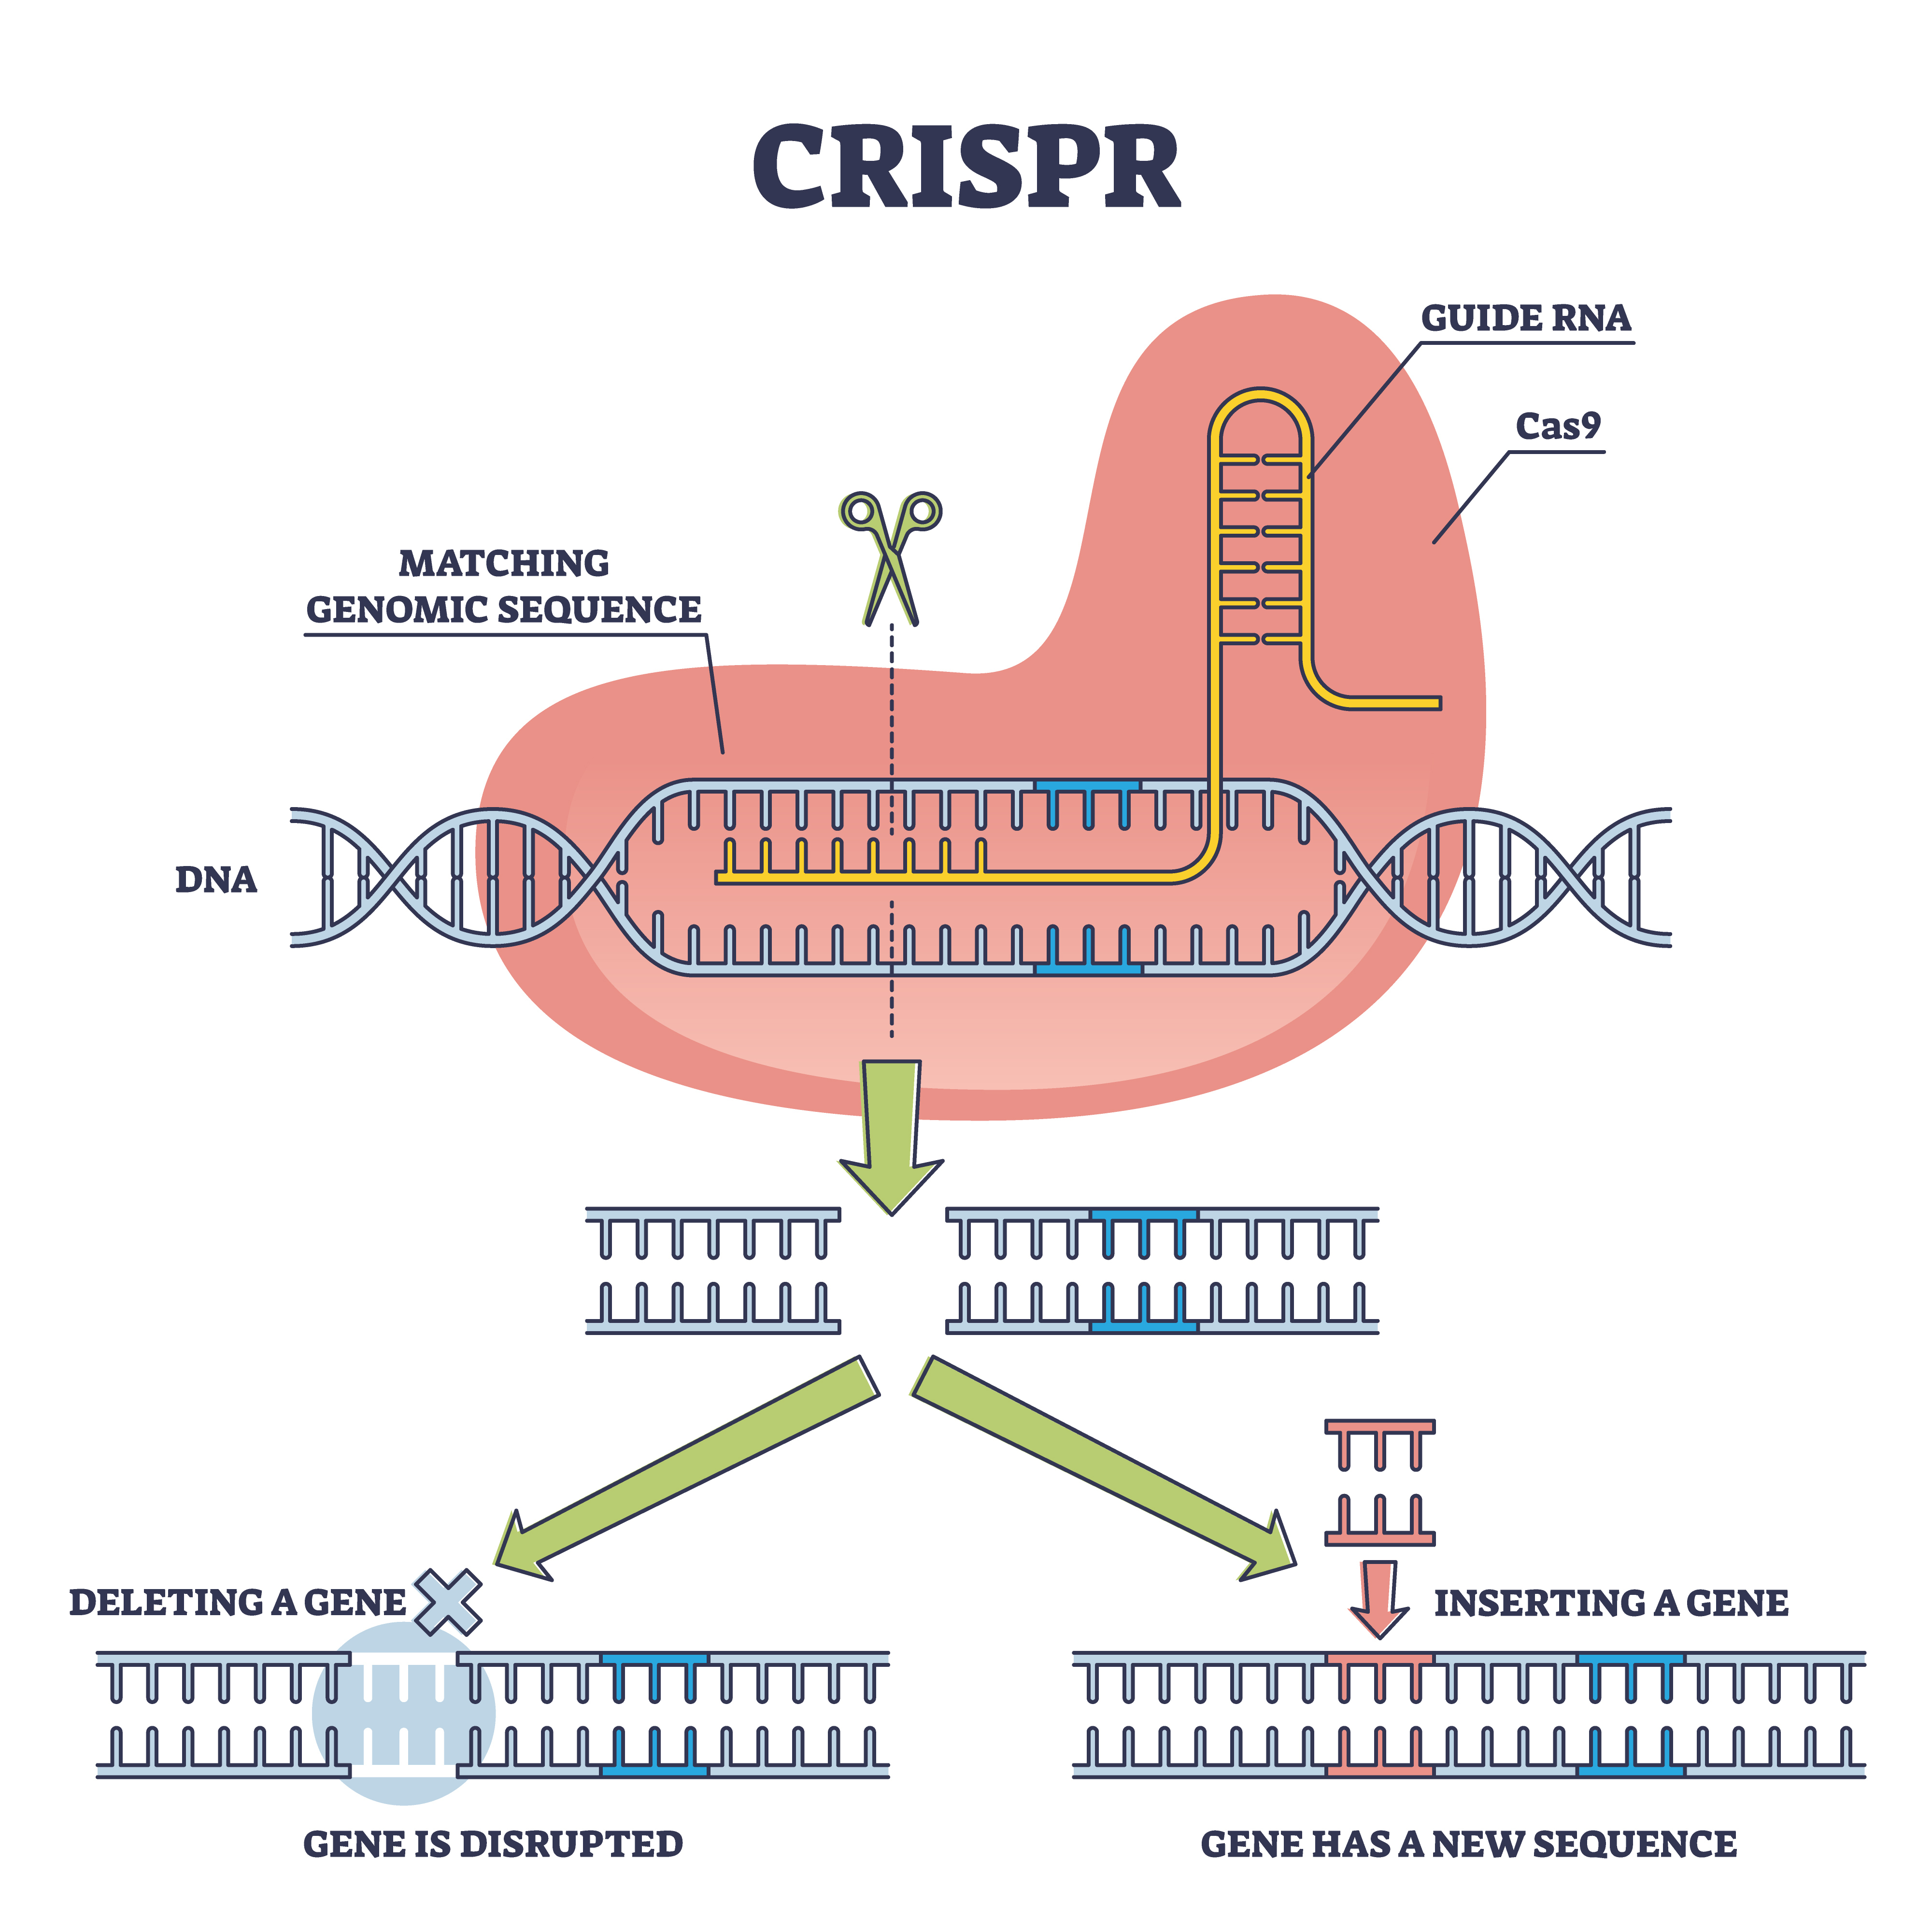 Инфорграфика показва белязан cas ензим, свързан с РНК верига.  След това показва как комплексът може да пререже дължина от ДНК, за да изтрие ген или да вмъкне нов на негово място